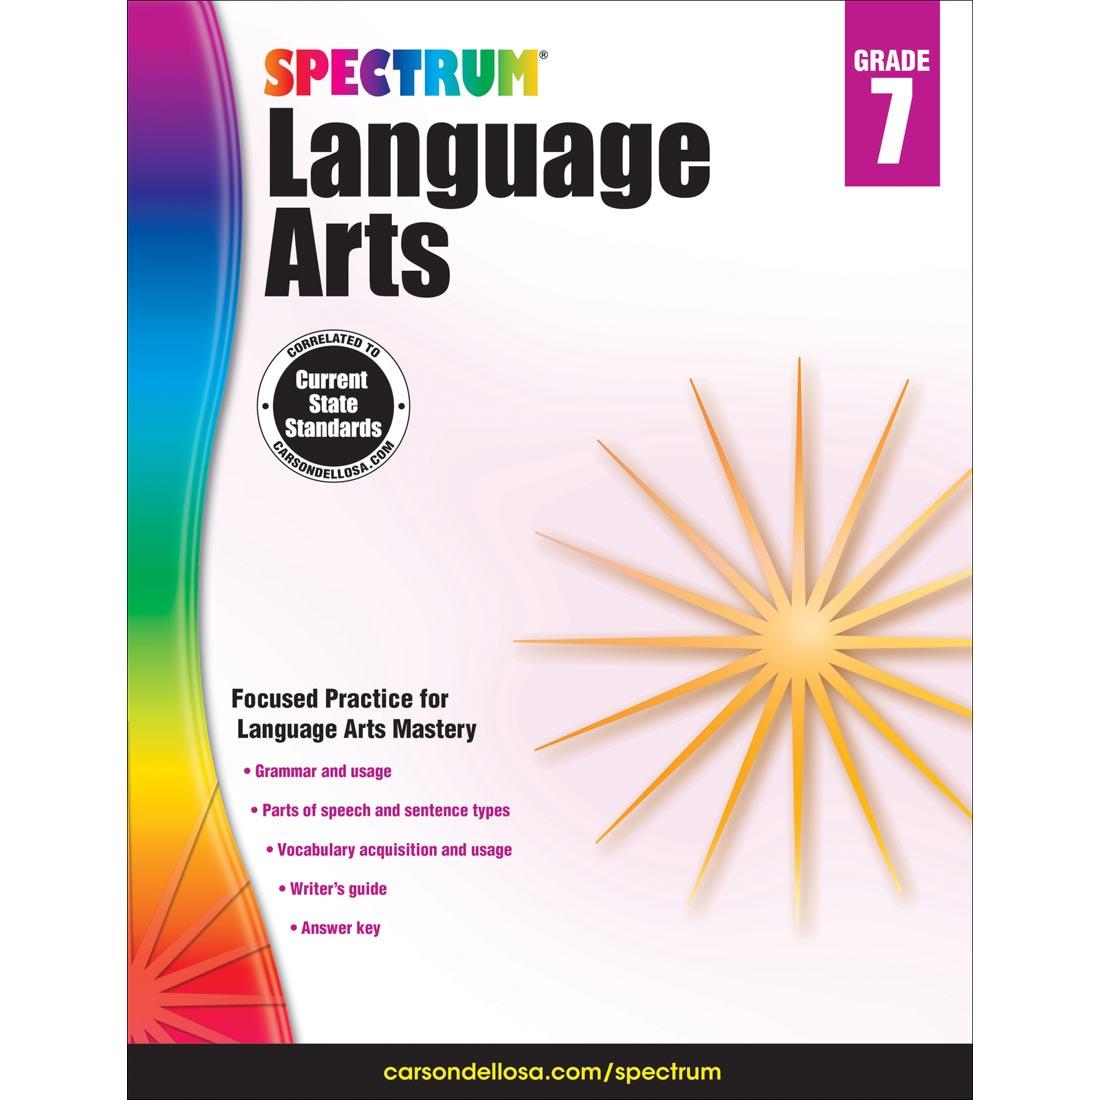 Spectrum Language Arts Book by Carson Dellosa Grade 7